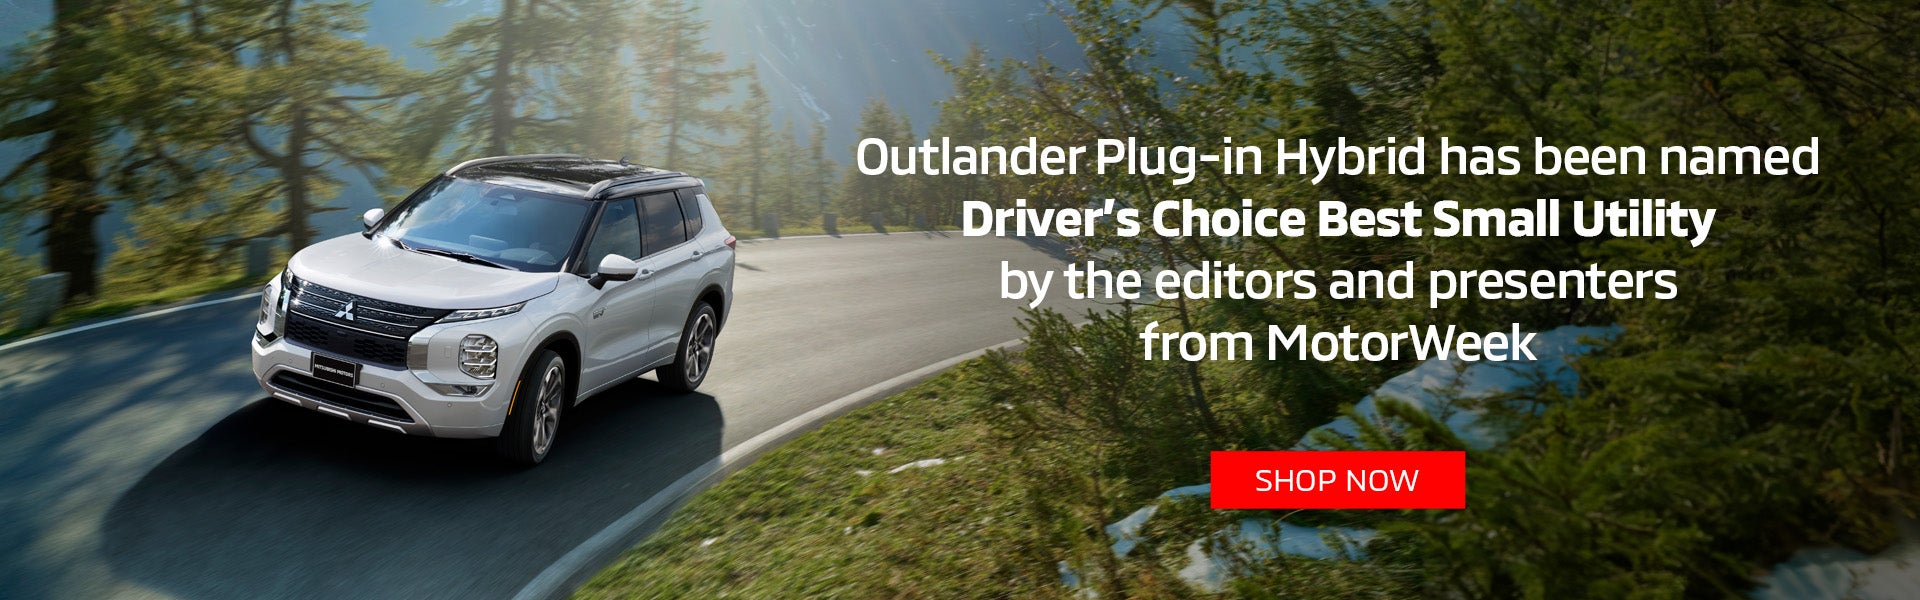 Outlander Plug-in Hybrid